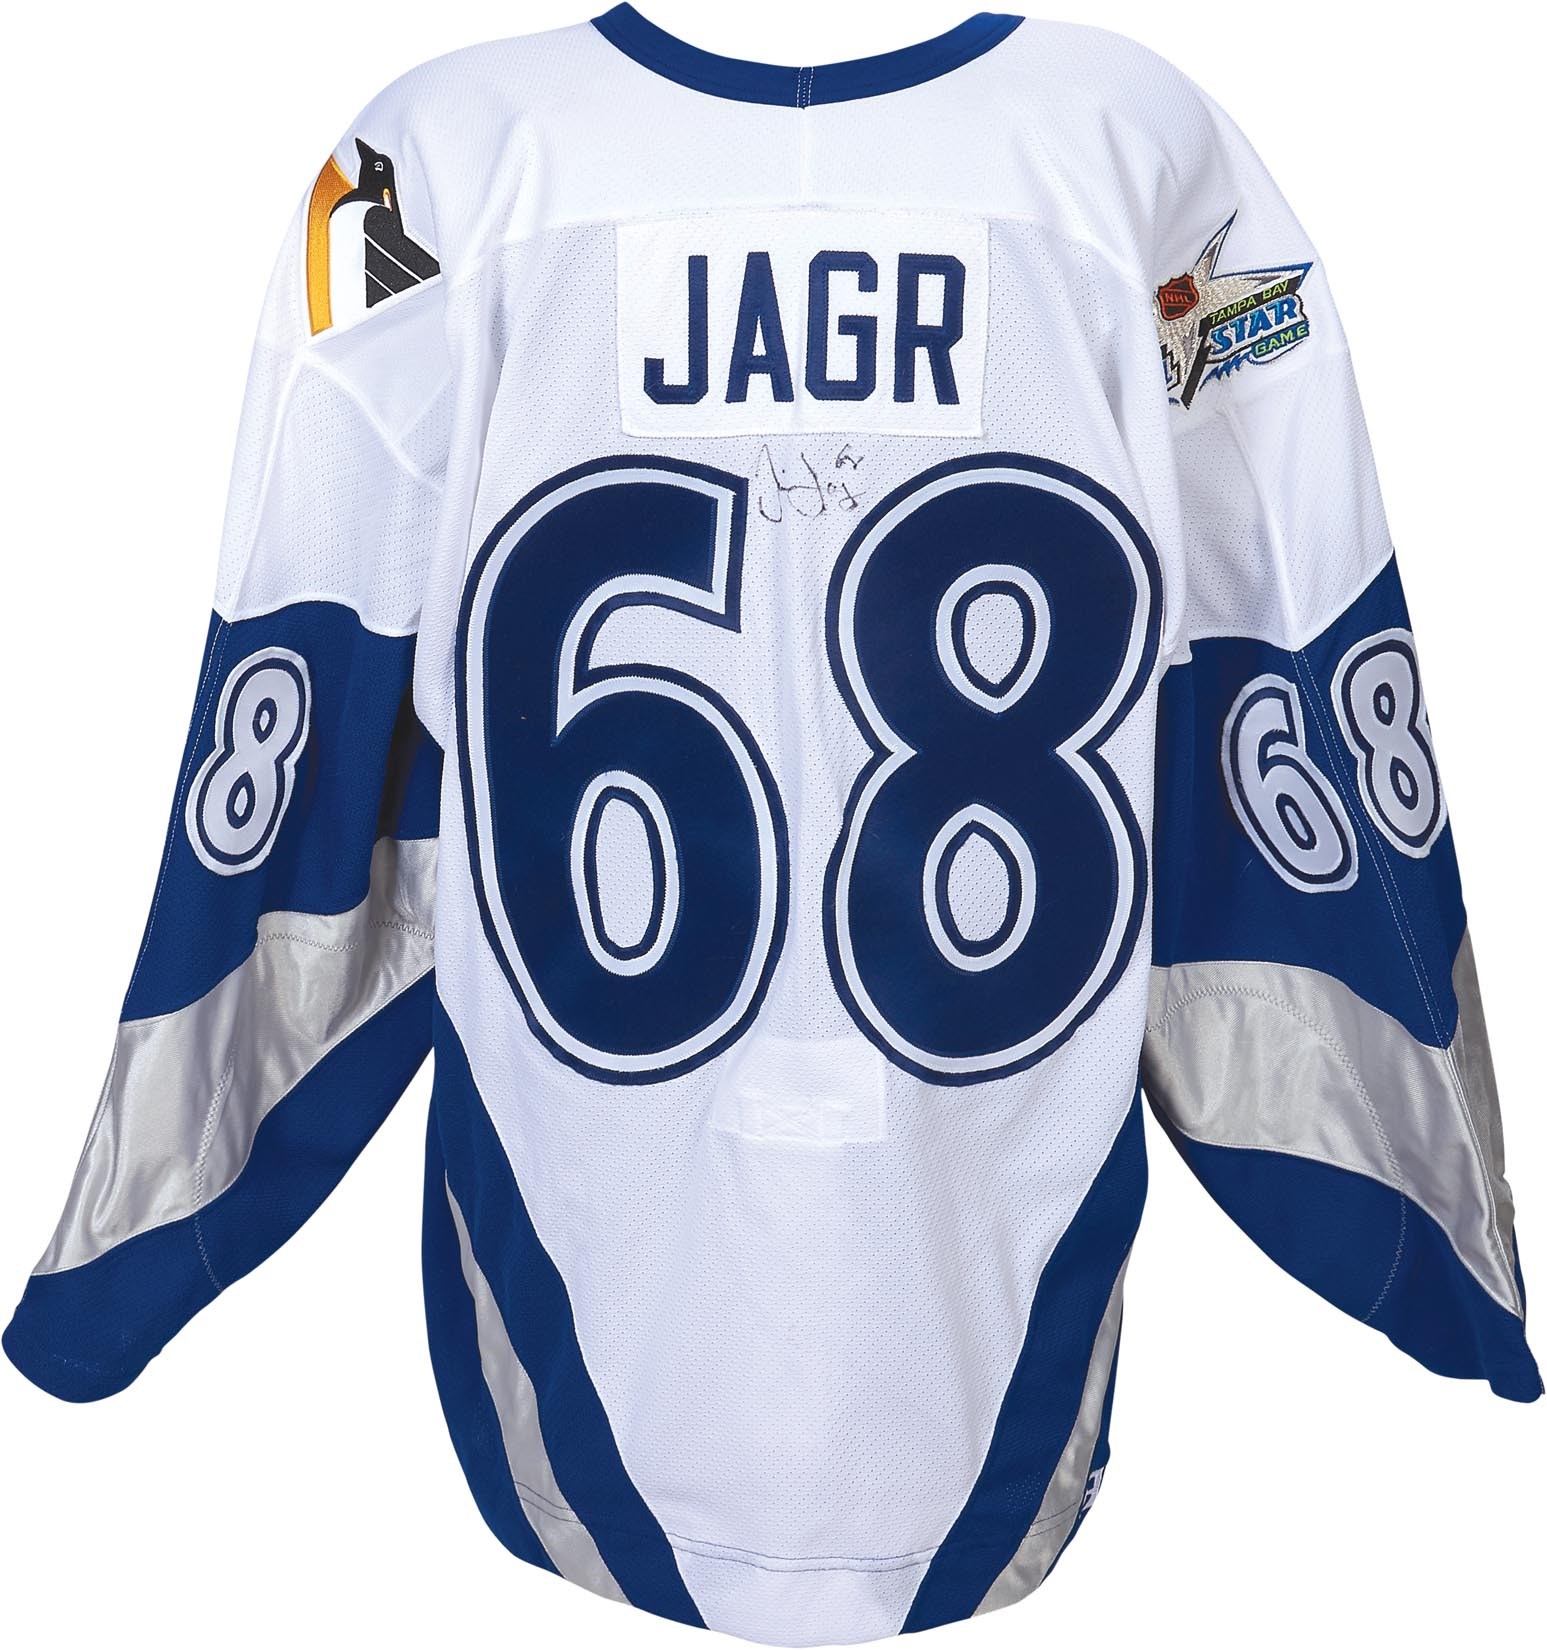 Hockey - 1999 Jaromir Jagr All-Star Game Worn Jersey